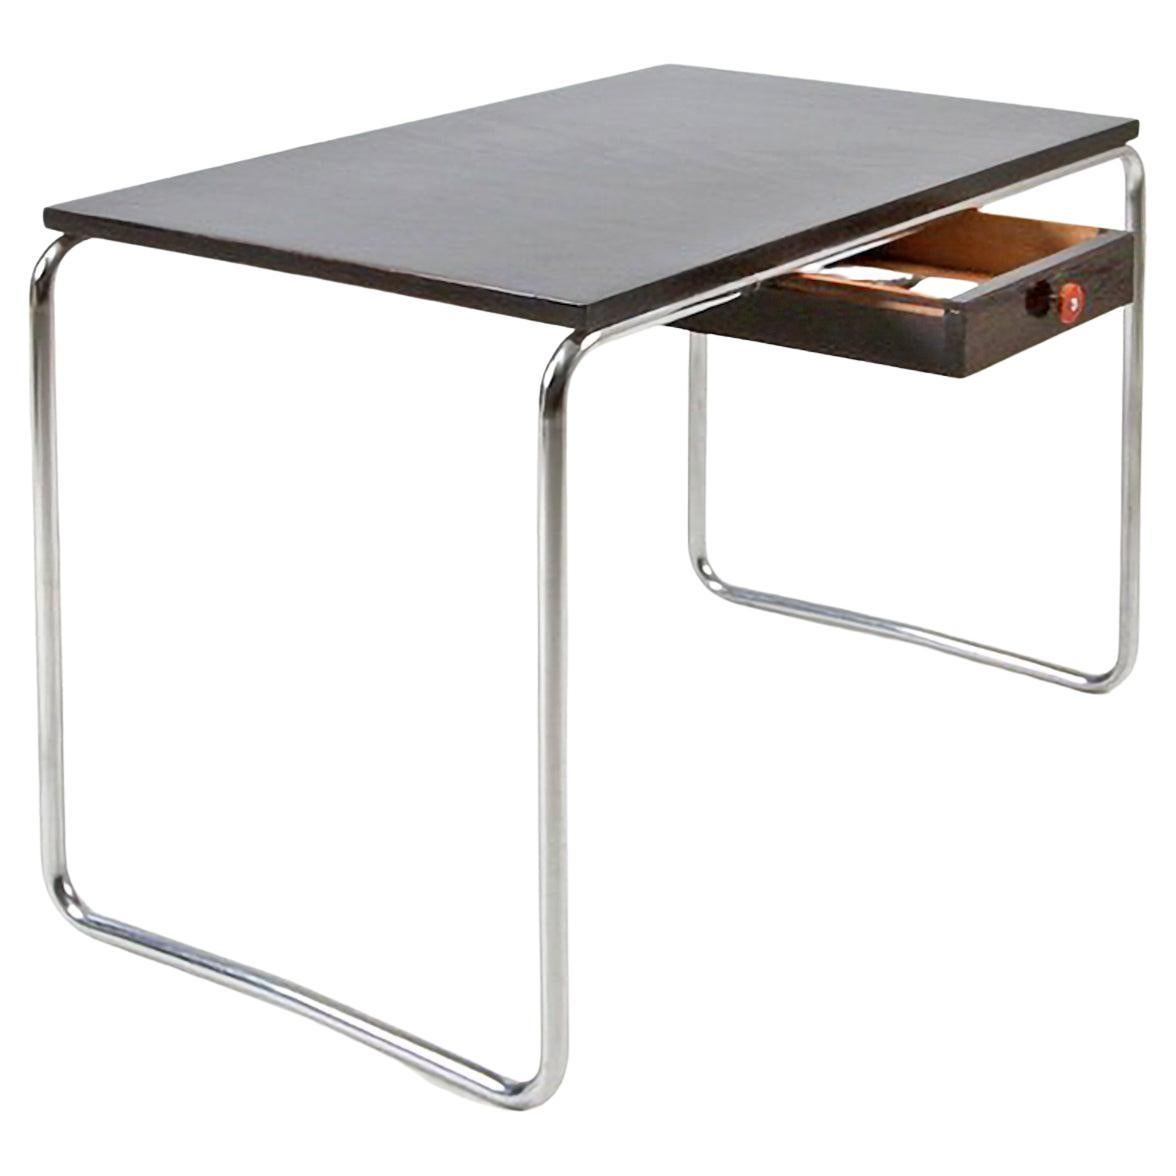 Modernistischer röhrenförmiger Stahltisch nach Maß aus verchromtem Metall und glänzendem lackiertem Holz